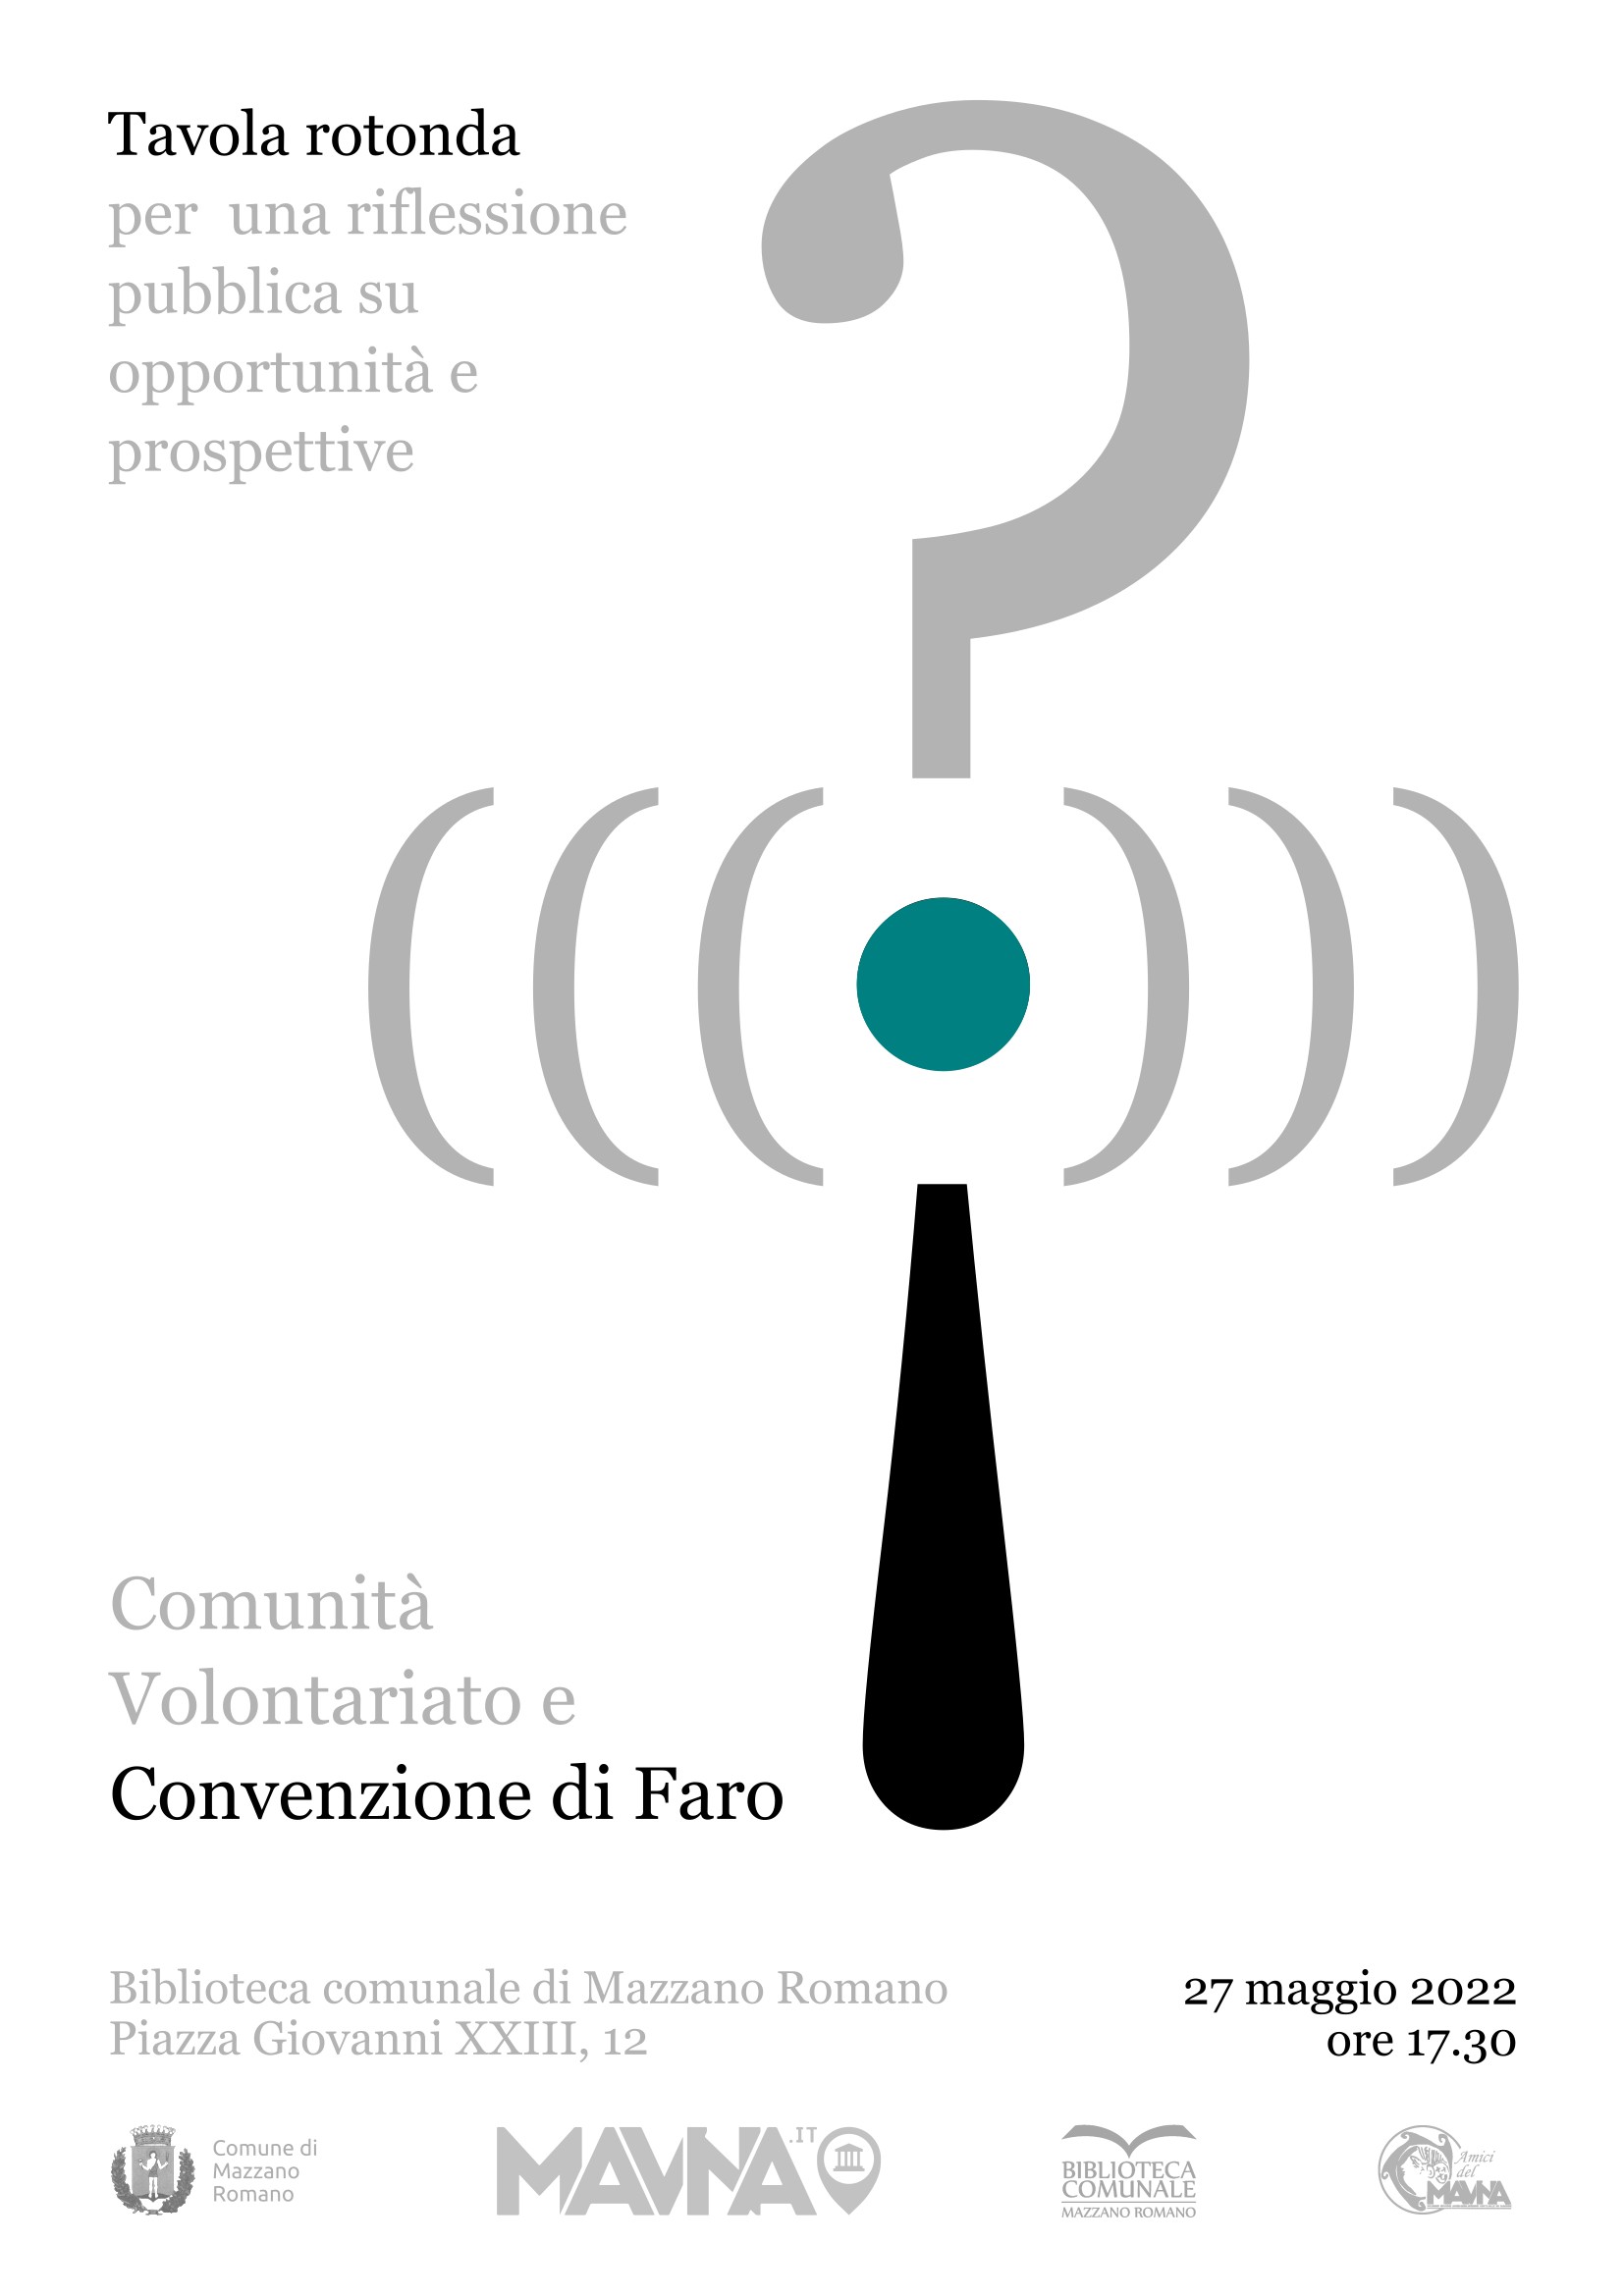 Comunitá, Volontariato e Convenzione di Faro